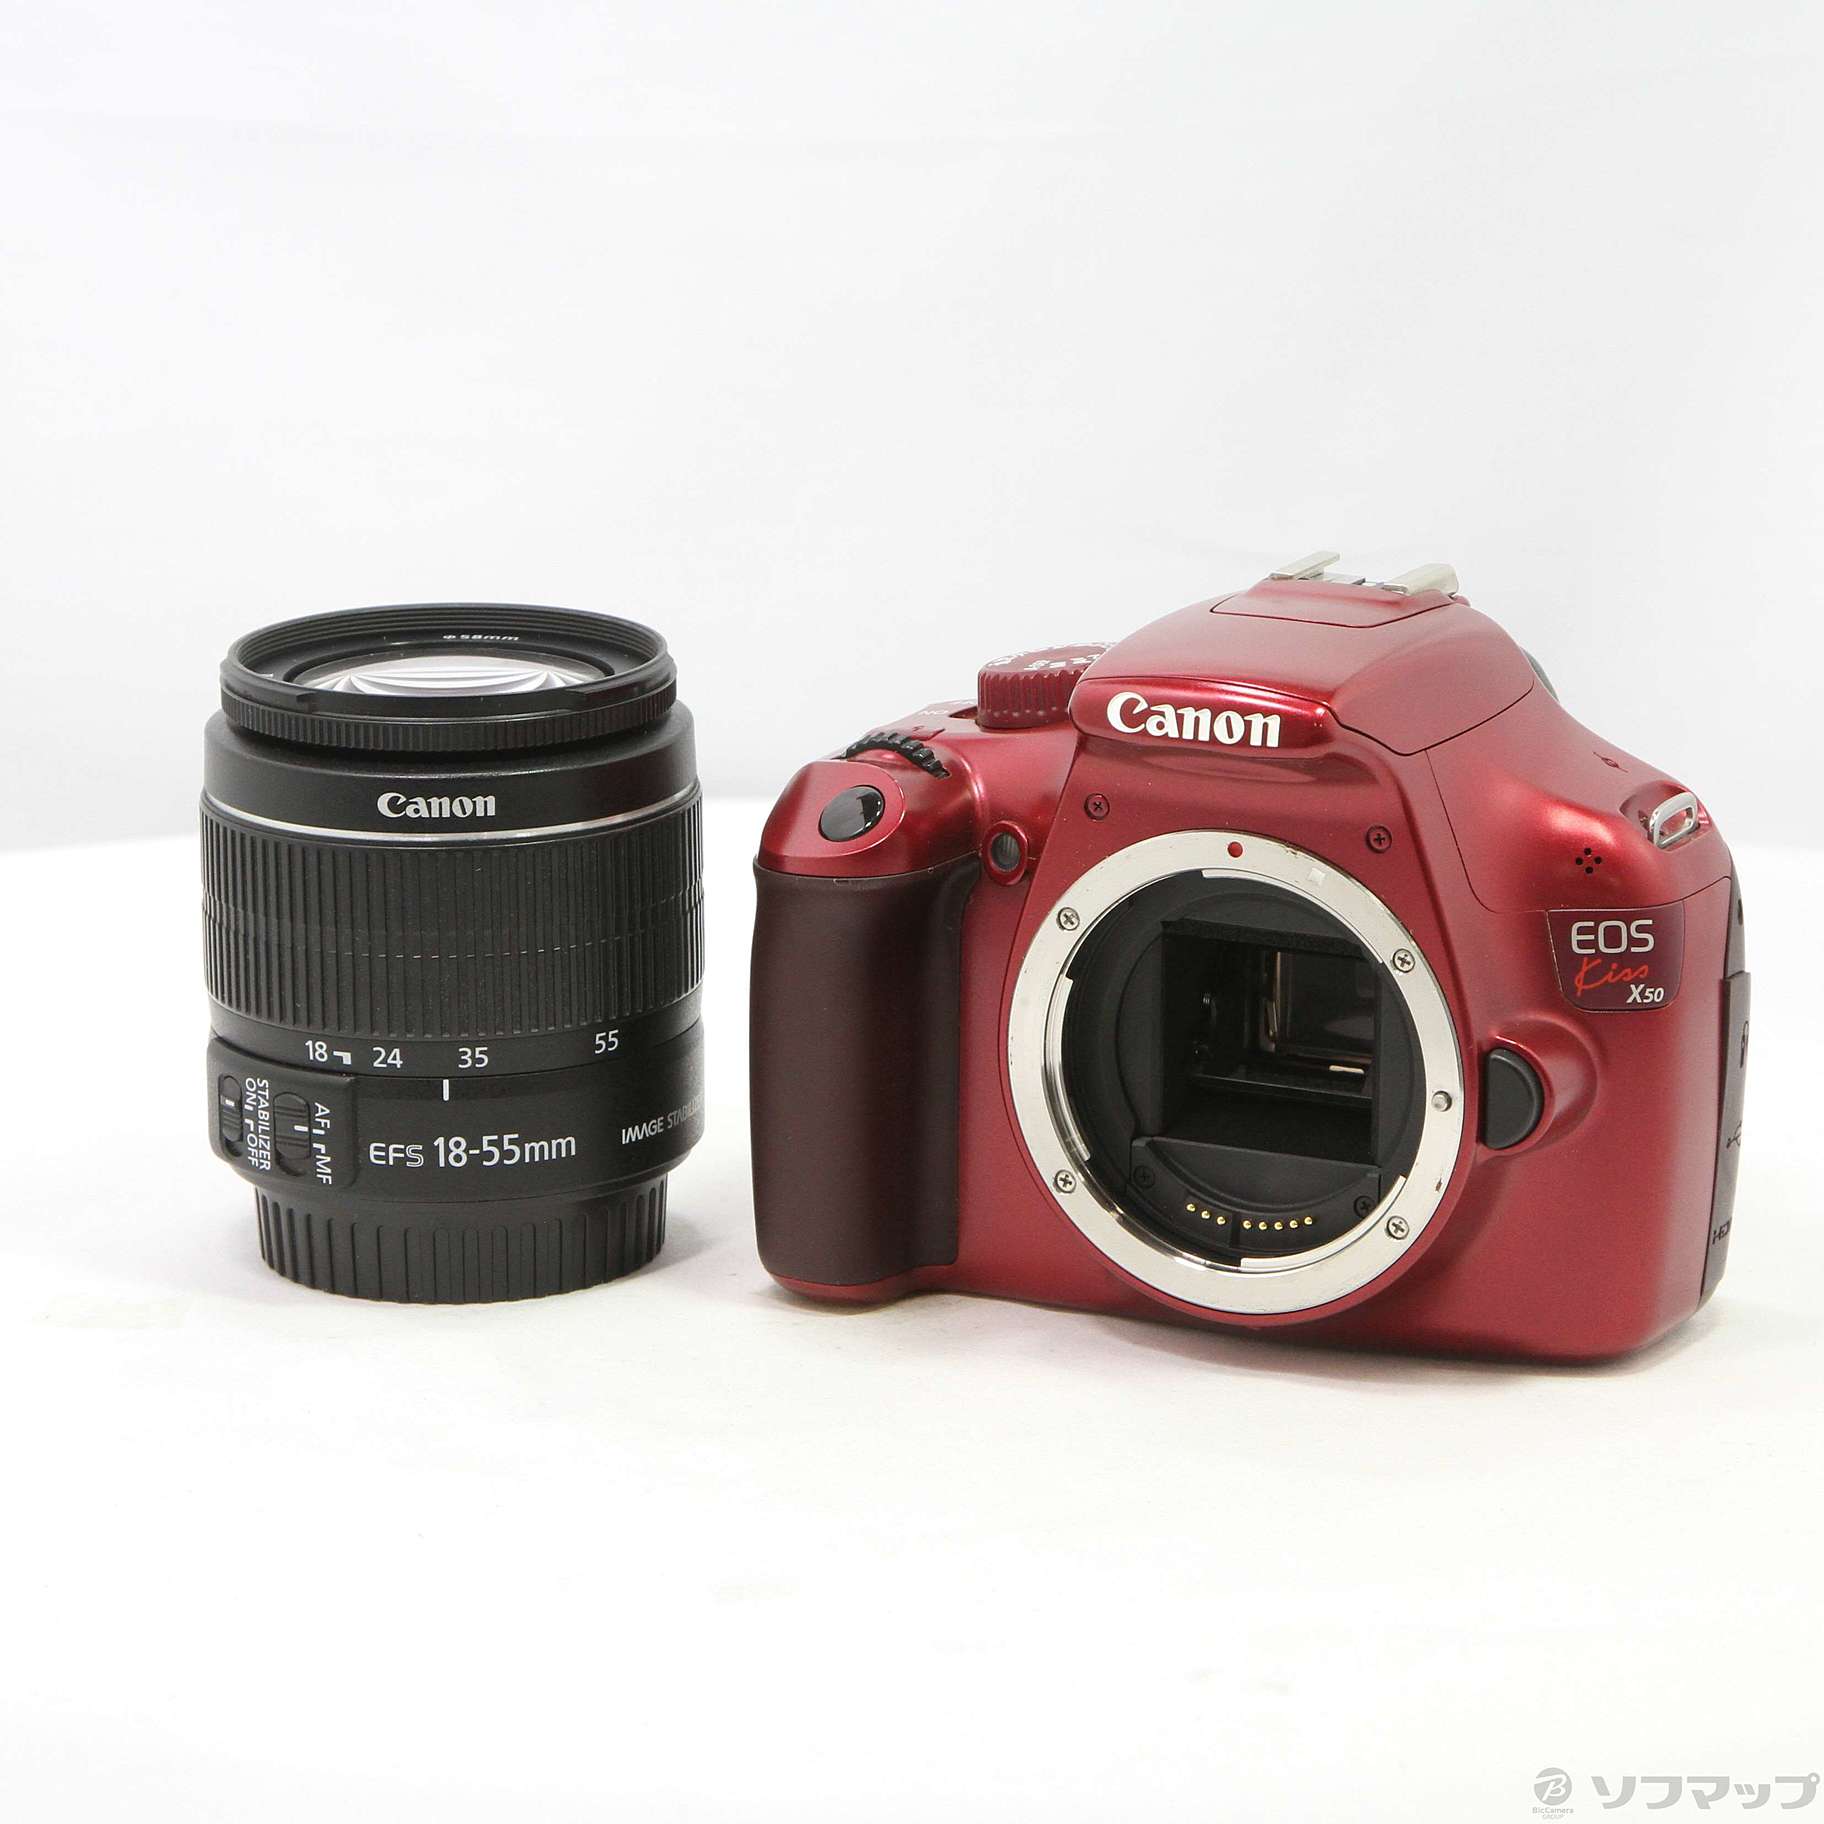 新作通販 Canon デジタル一眼レフカメラ EOS Kiss X7 レンズキット EF